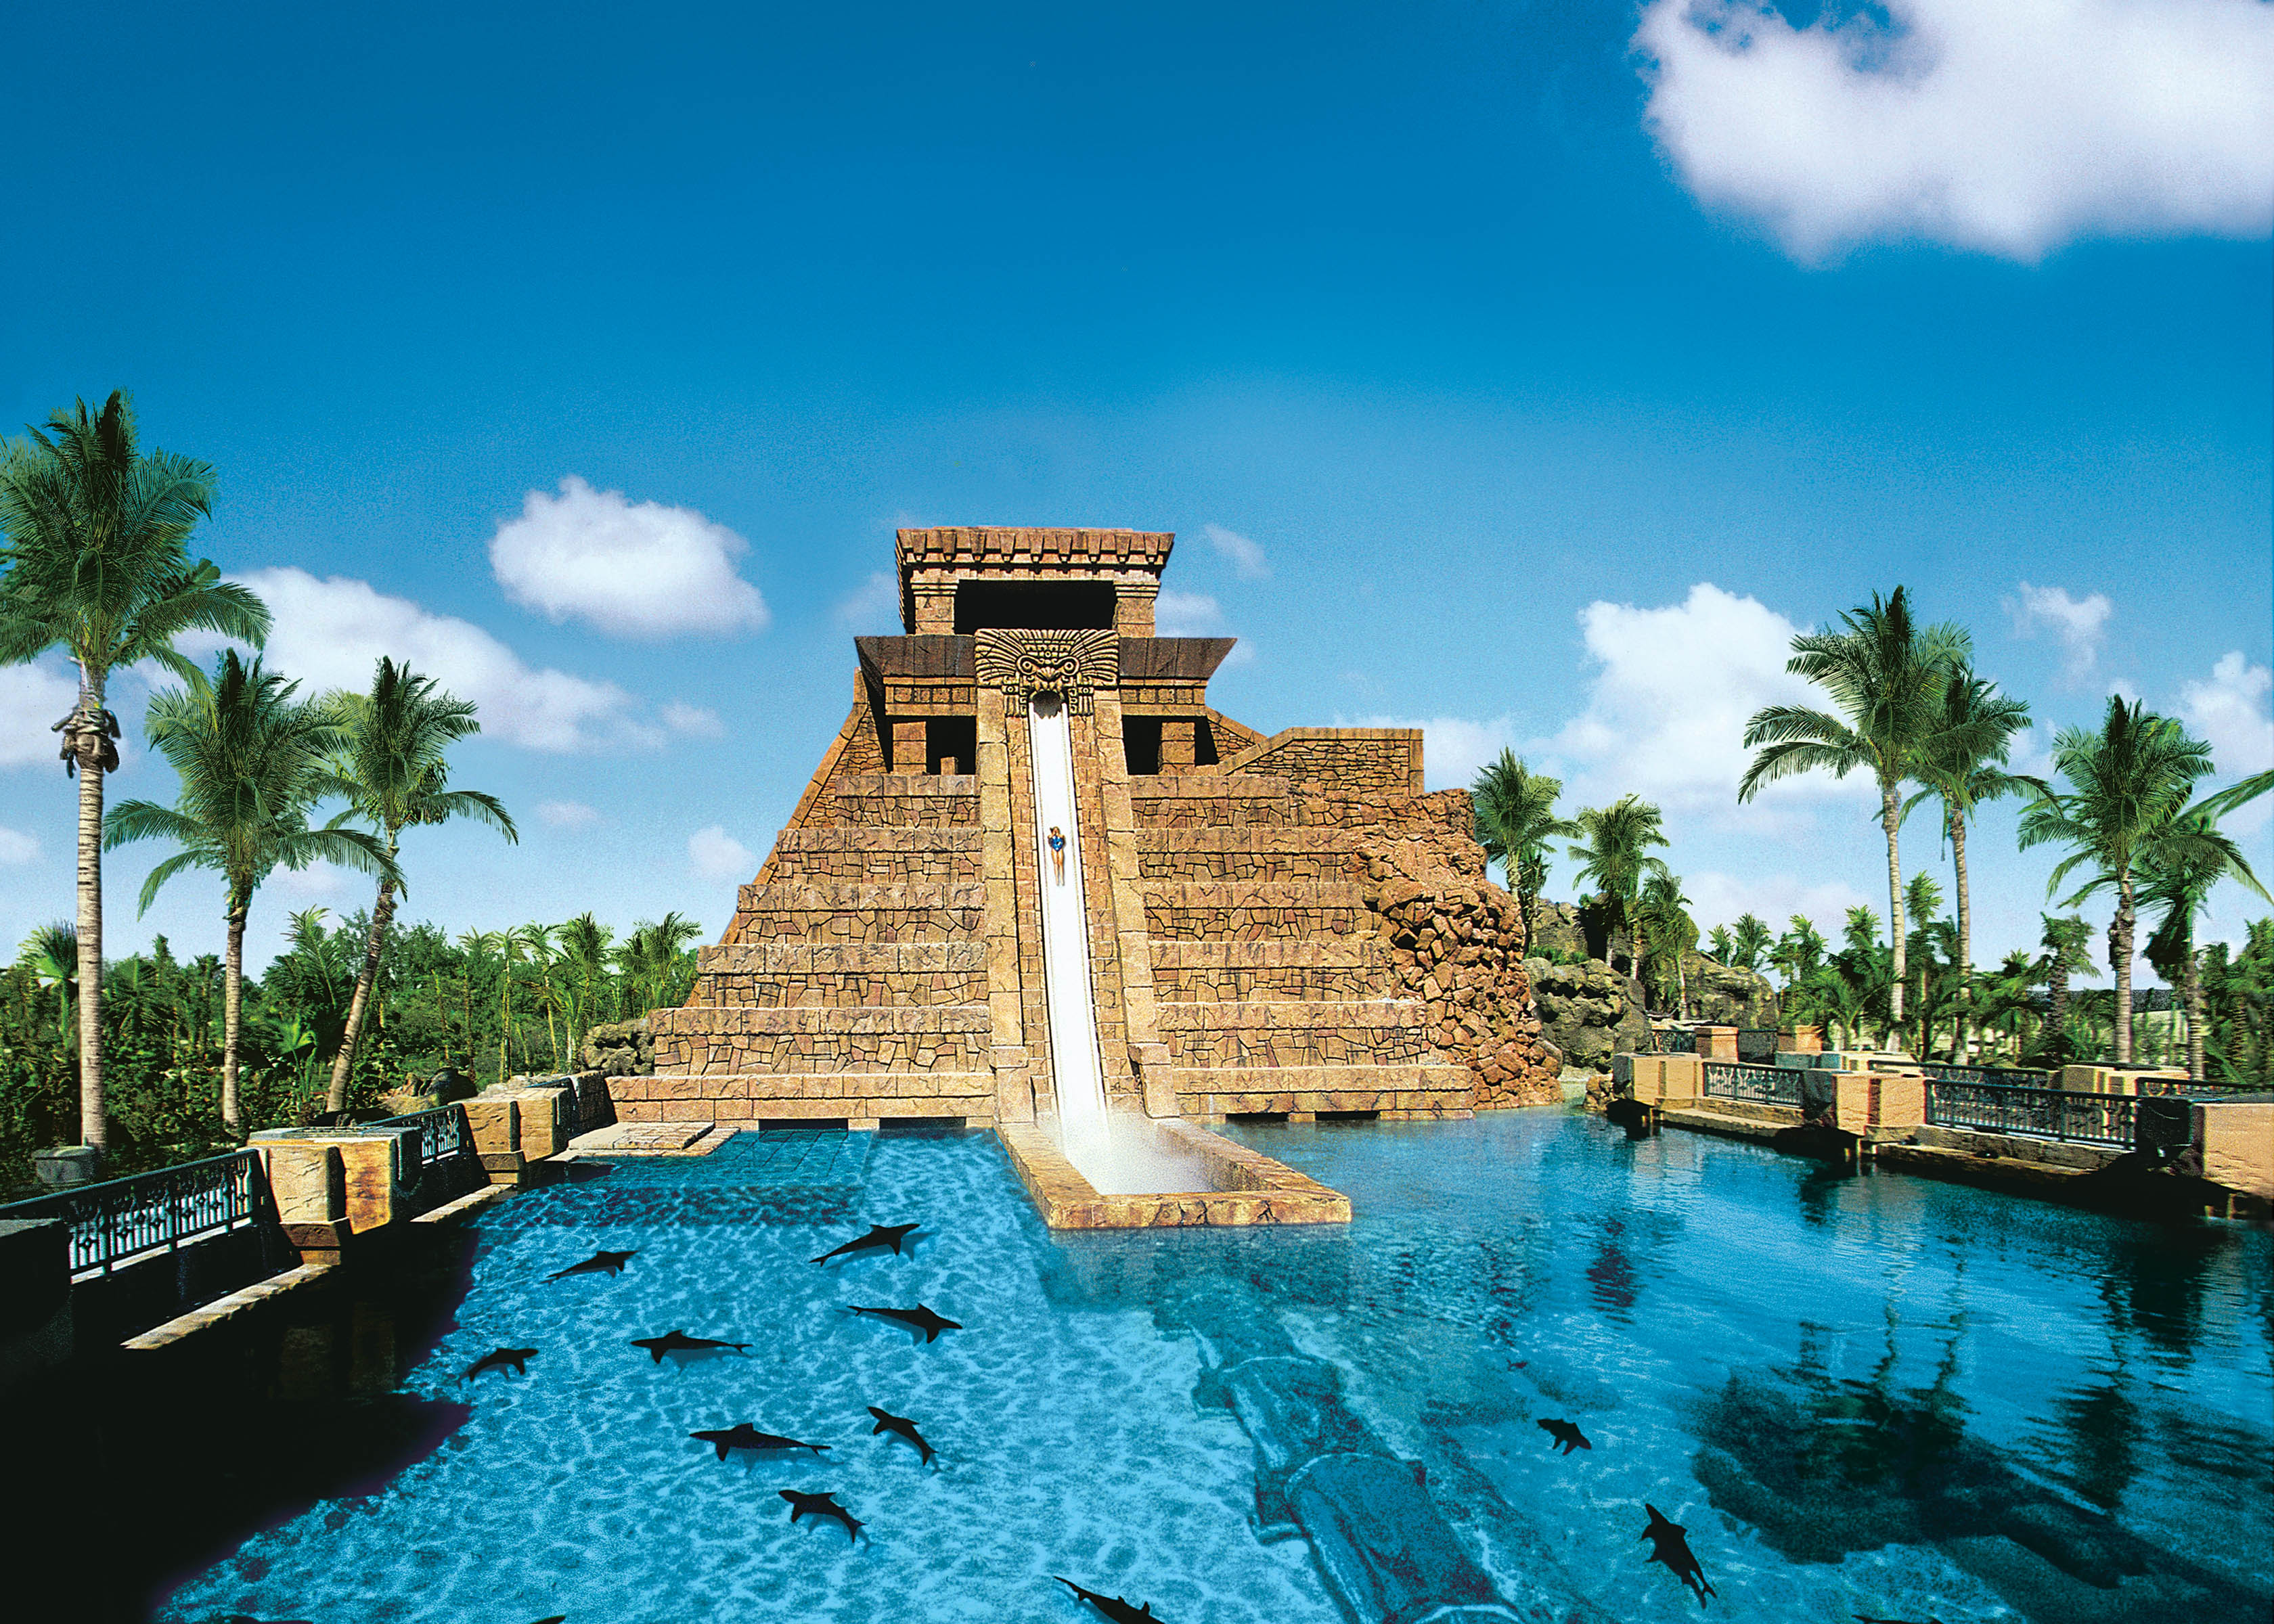 Атлантида на песке: билет в аквапарк Aquaventure Atlantis в Дубае цена $95, 32 отзыва